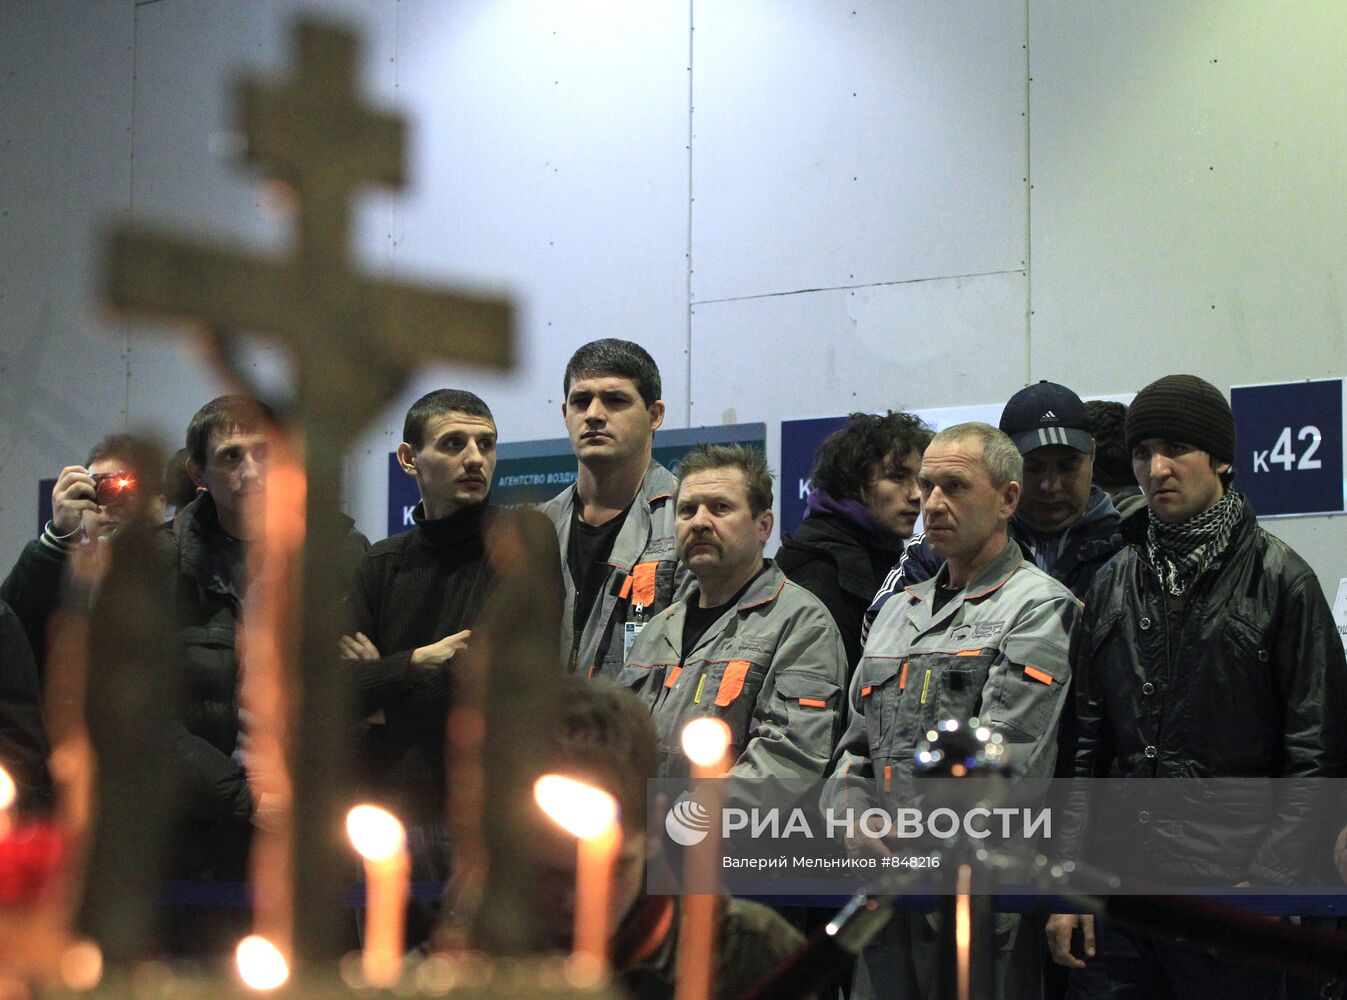 Панихида по жертвам теракта в "Домодедово"